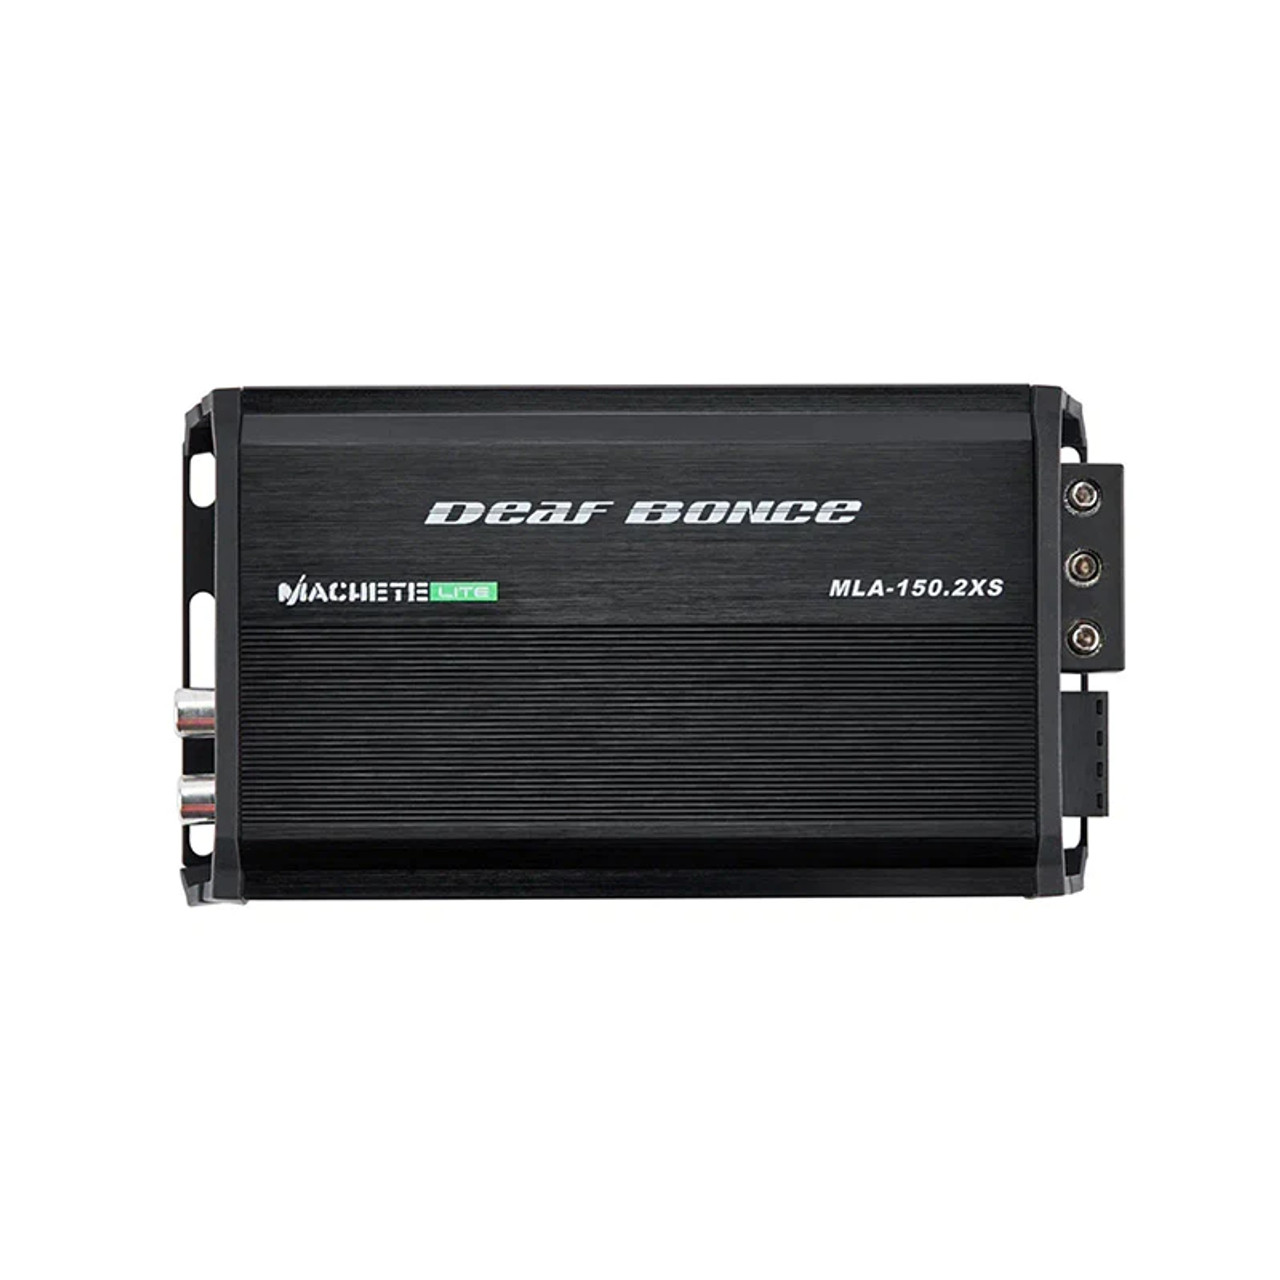 MACHETE MLA-150.2 XS | 150 Watt 2-channel amplifier